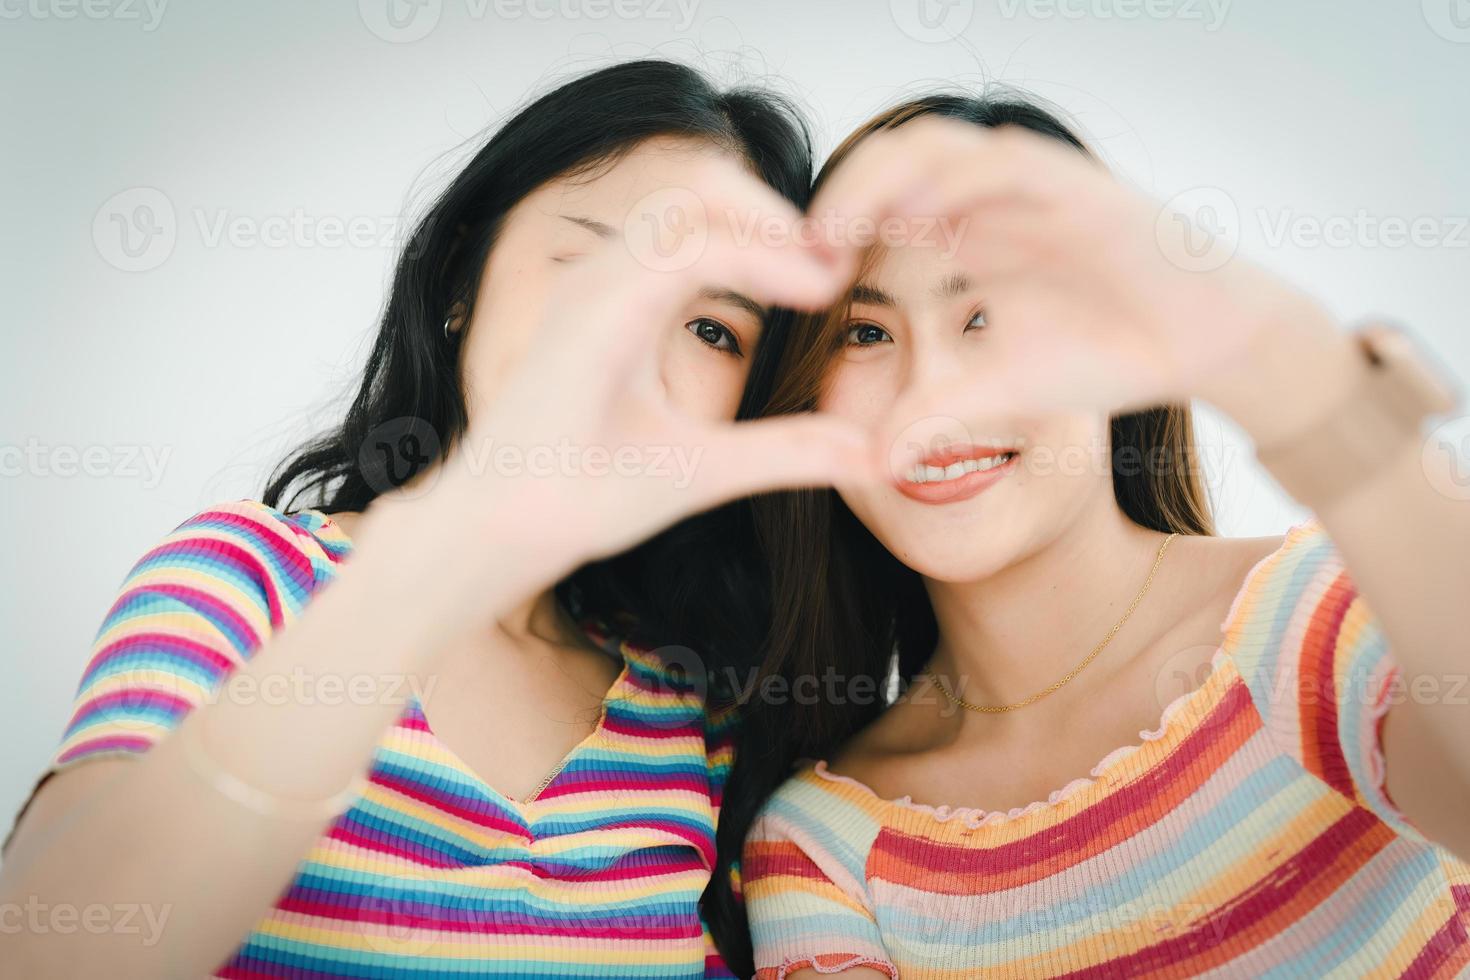 hbtq, hbt-koncept, homosexualitet, porträtt av två asiatiska kvinnor som poserar lyckliga tillsammans och visar kärlek till varandra medan de är tillsammans foto